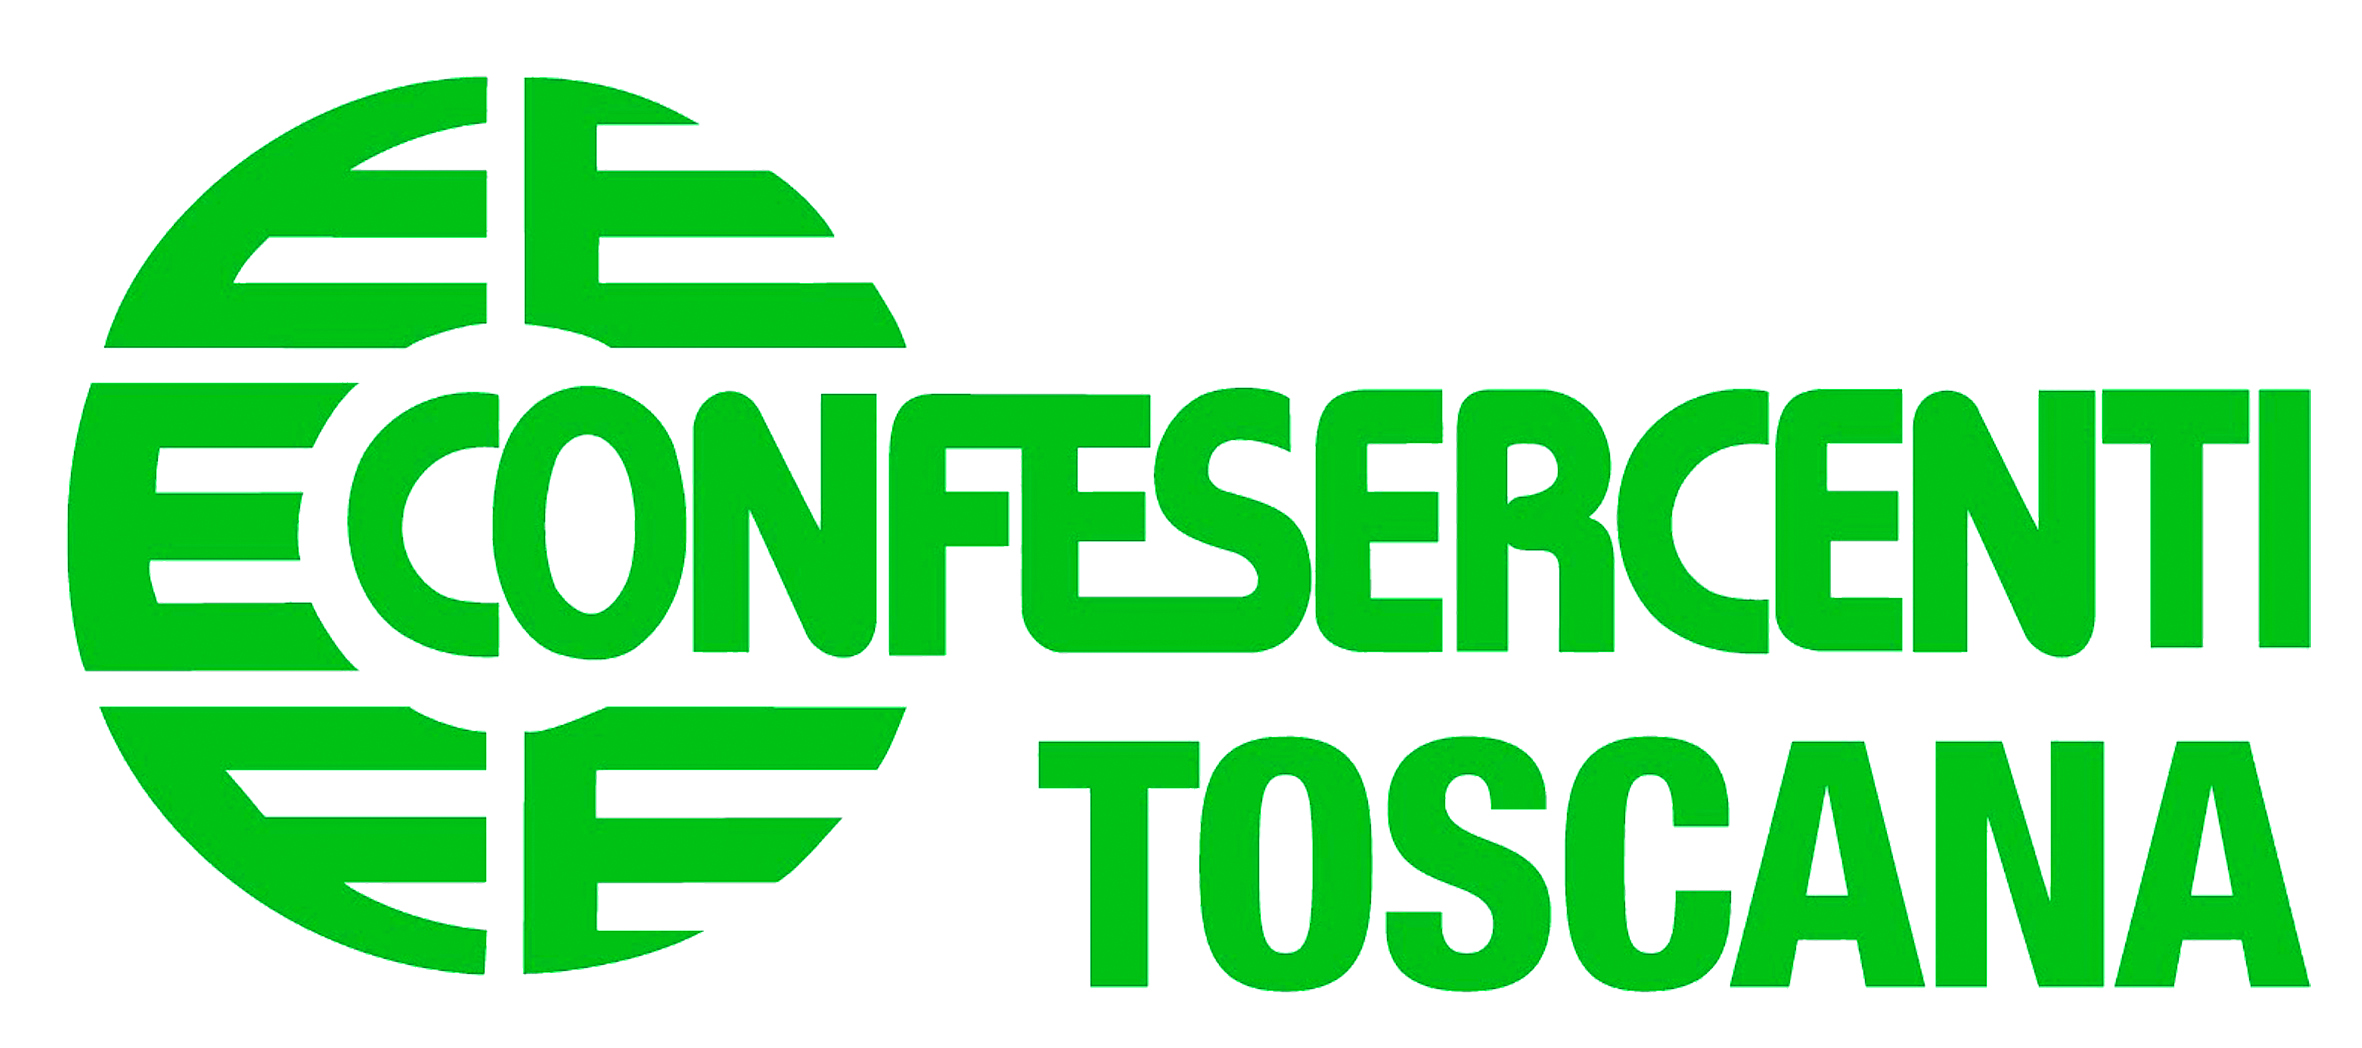 Confesercenti Toscana 